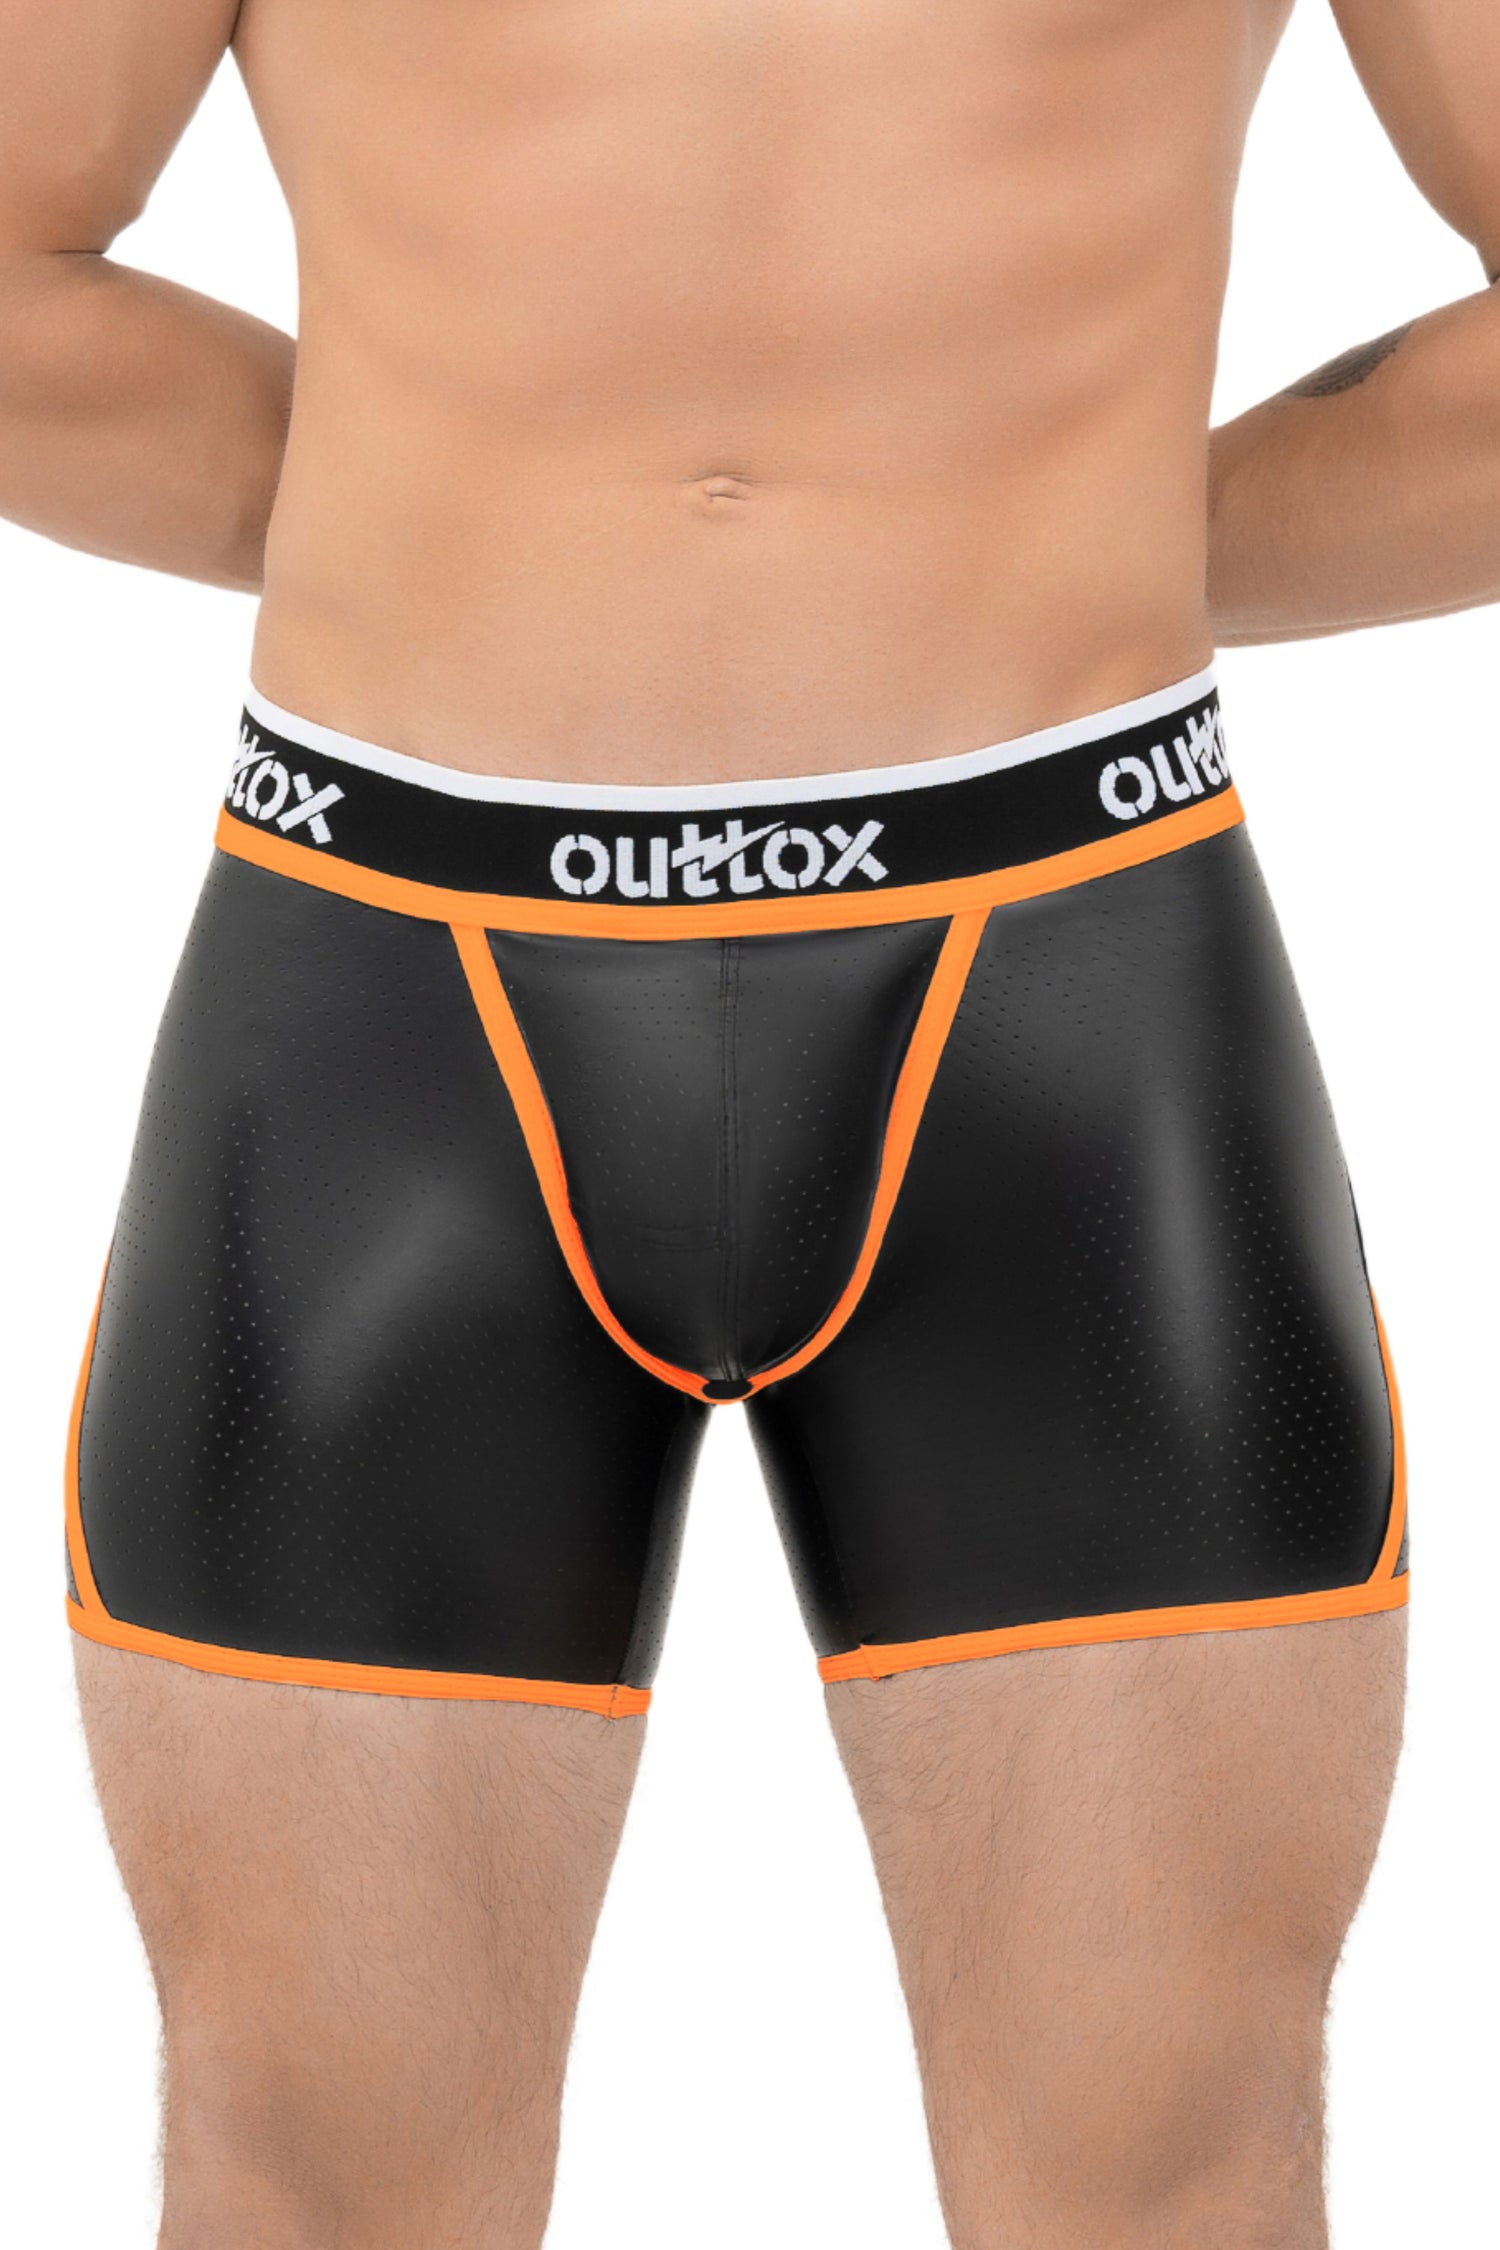 Outtox. Pantalones cortos traseros abiertos con bragueta a presión. Negro+Naranja